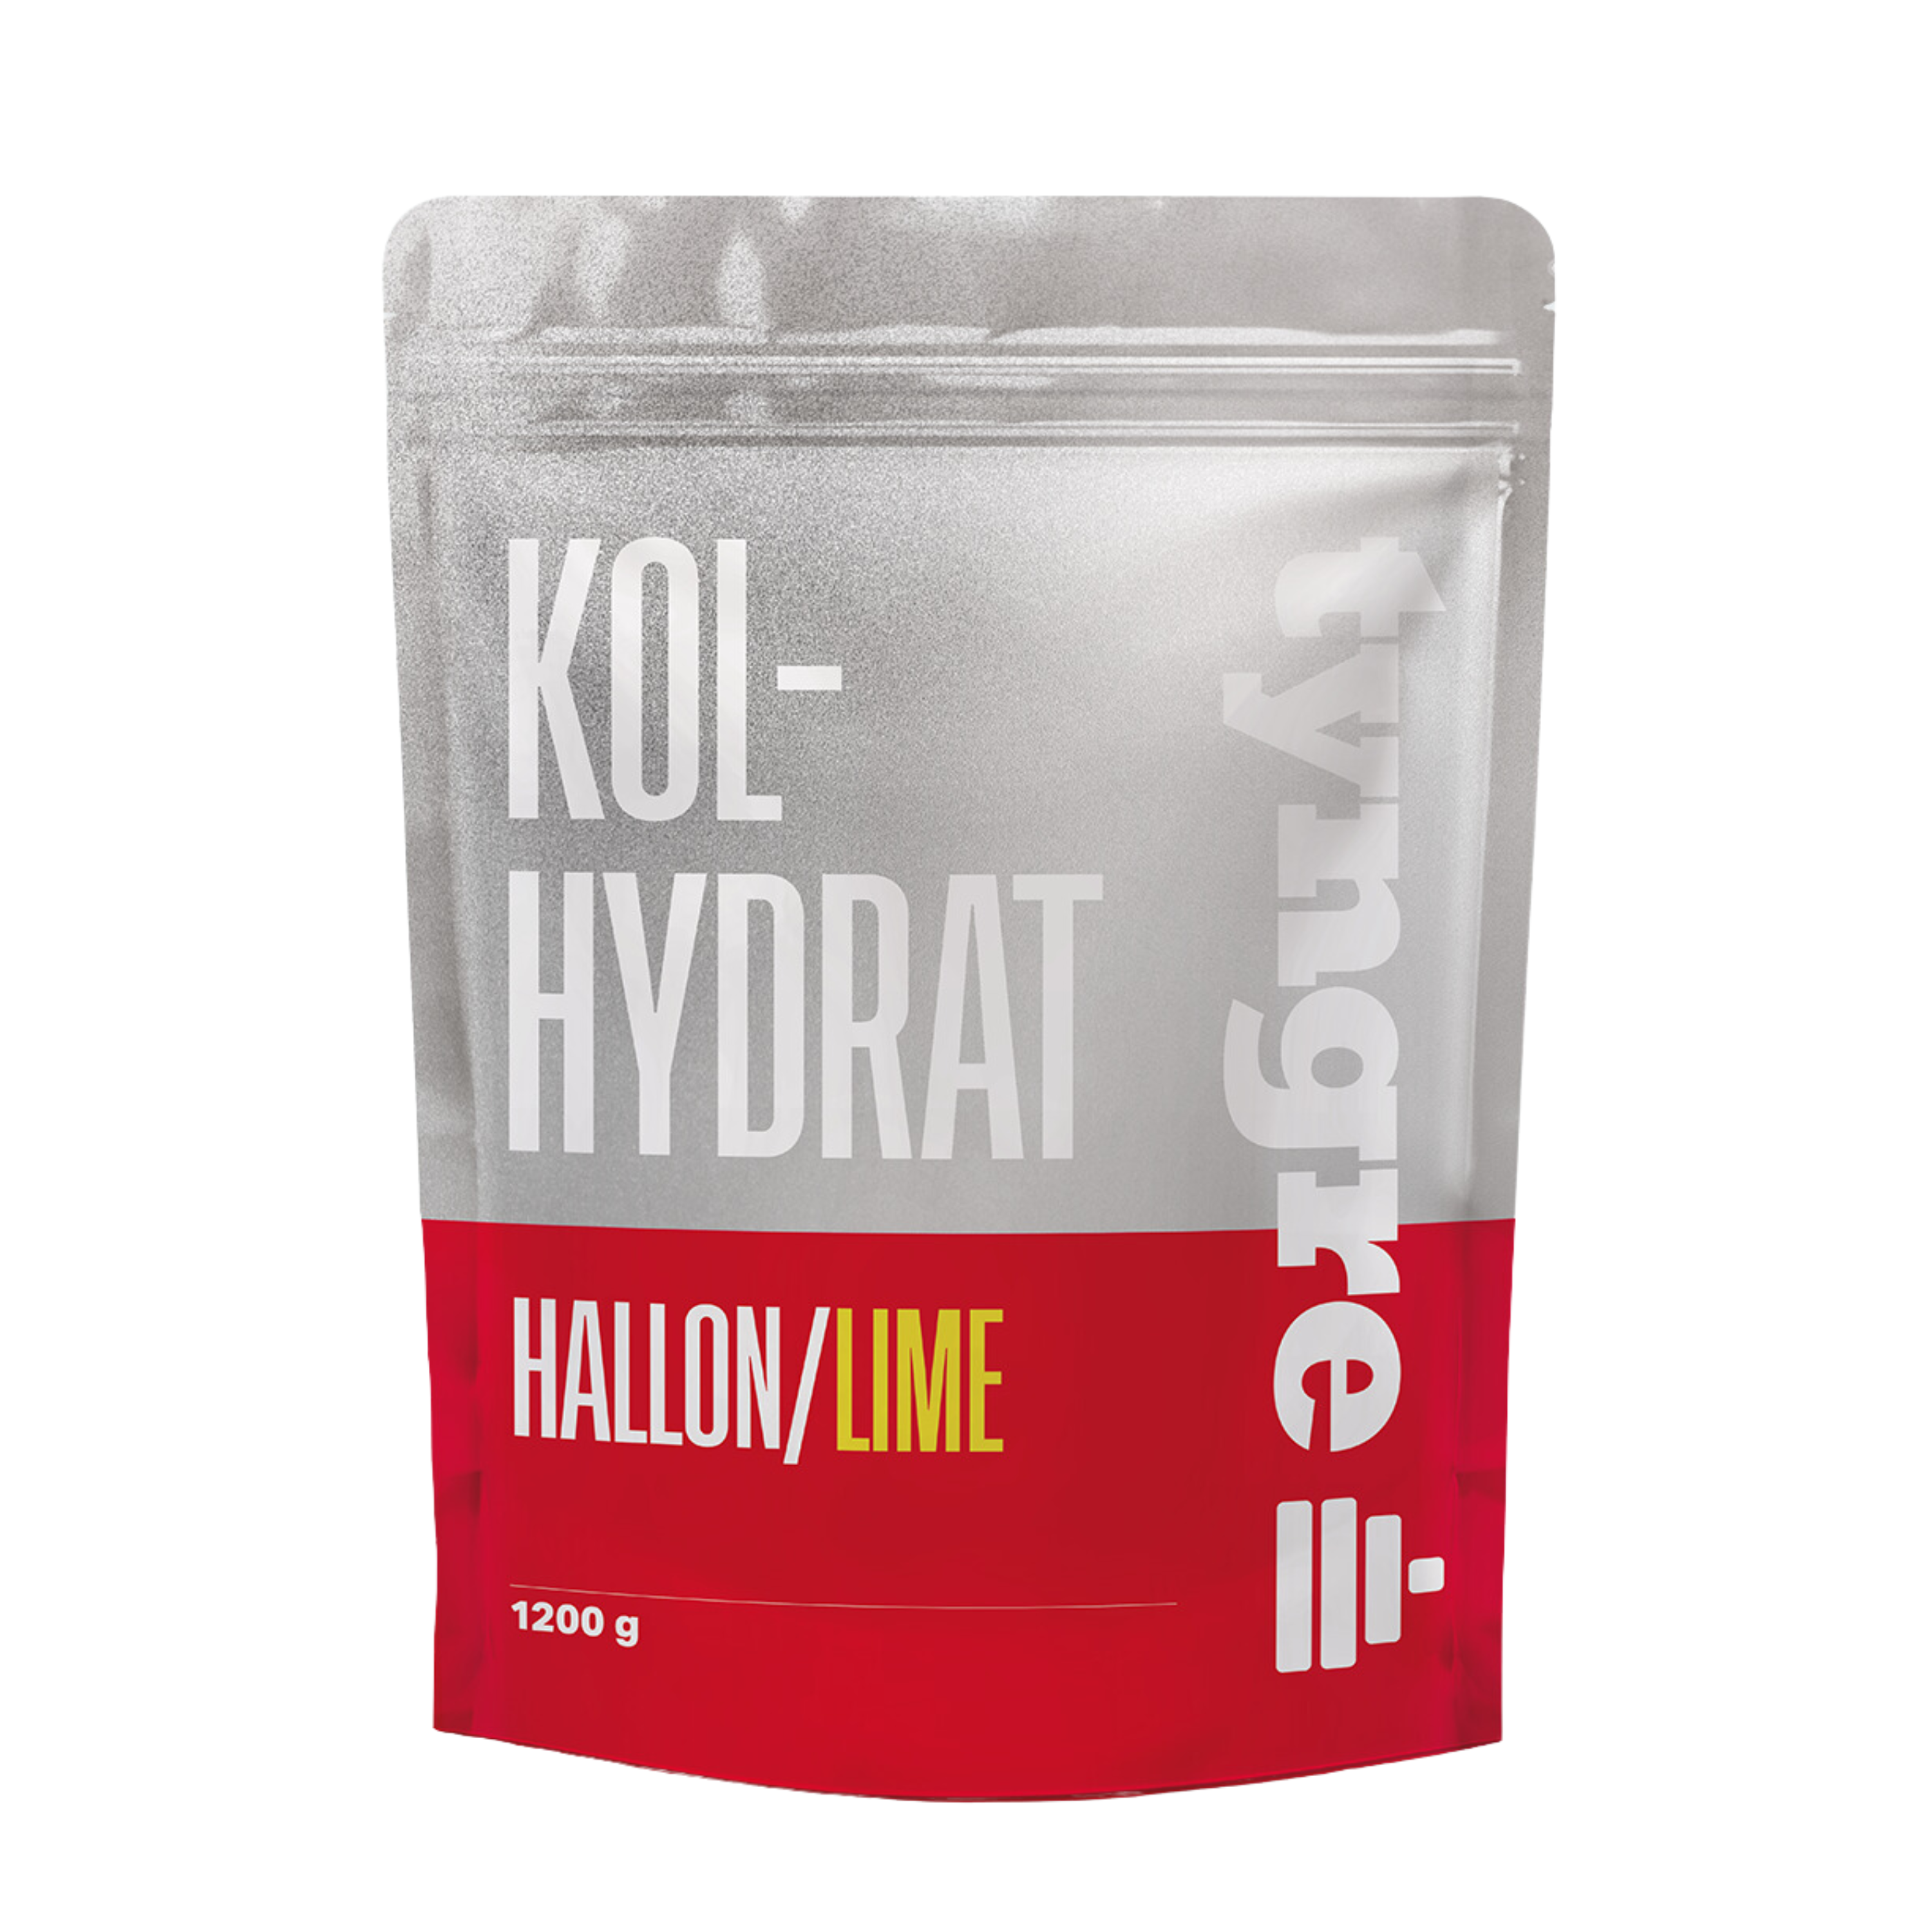 Kolhydrat Hallon/Lime 1200g